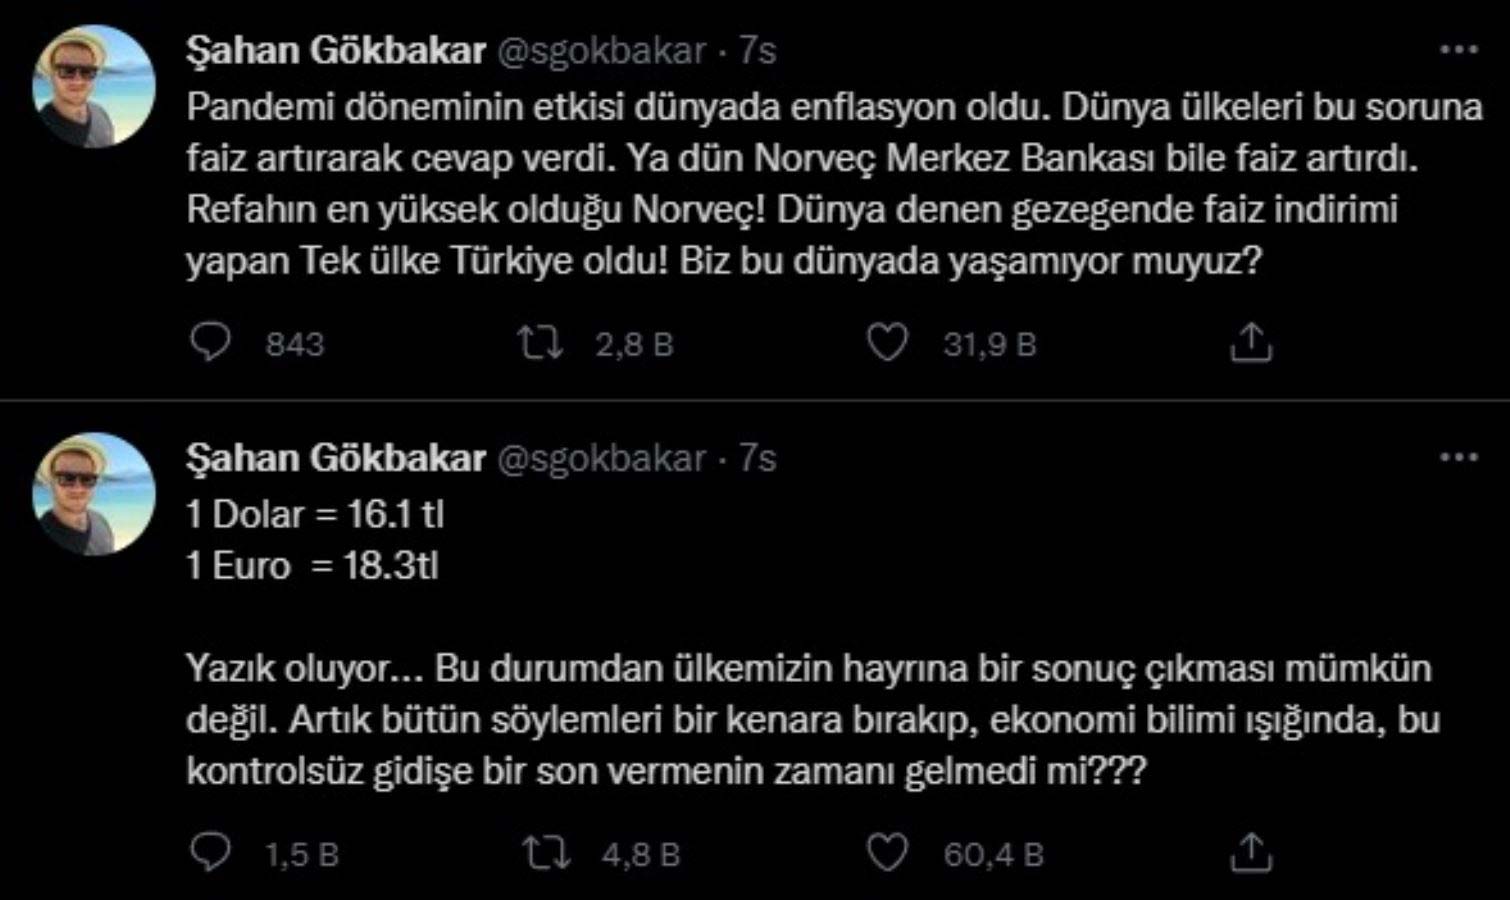 Şahan Gökbakar: 'Dünya denen gezegende faiz indirimi yapan tek ülke Türkiye oldu'